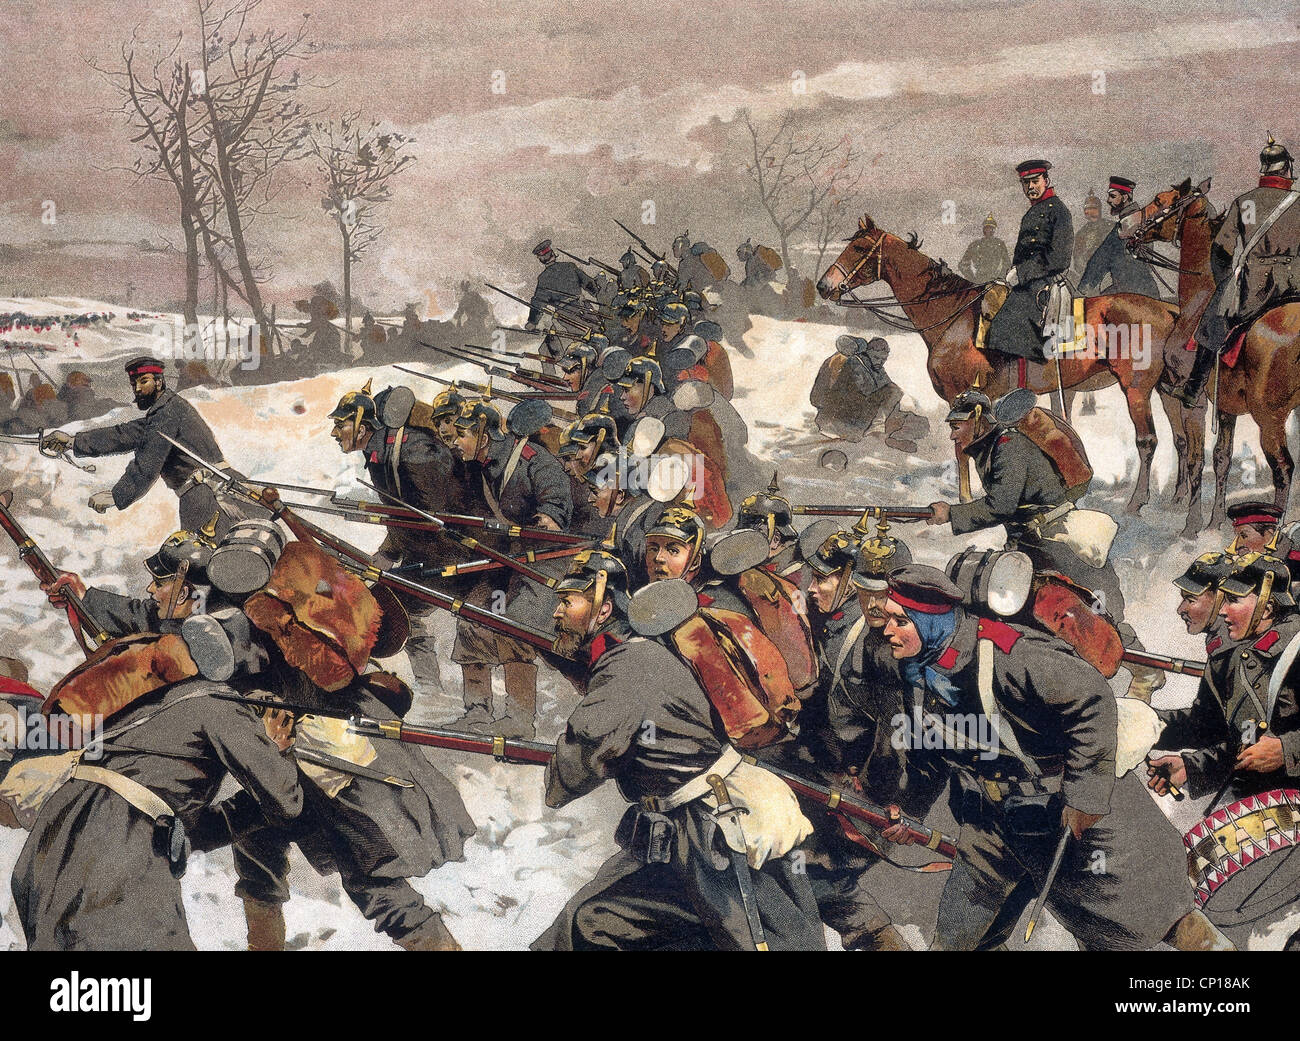 Evants Guerre Franco Prussienne 1870 1871 Bataille à La Lisaine 15